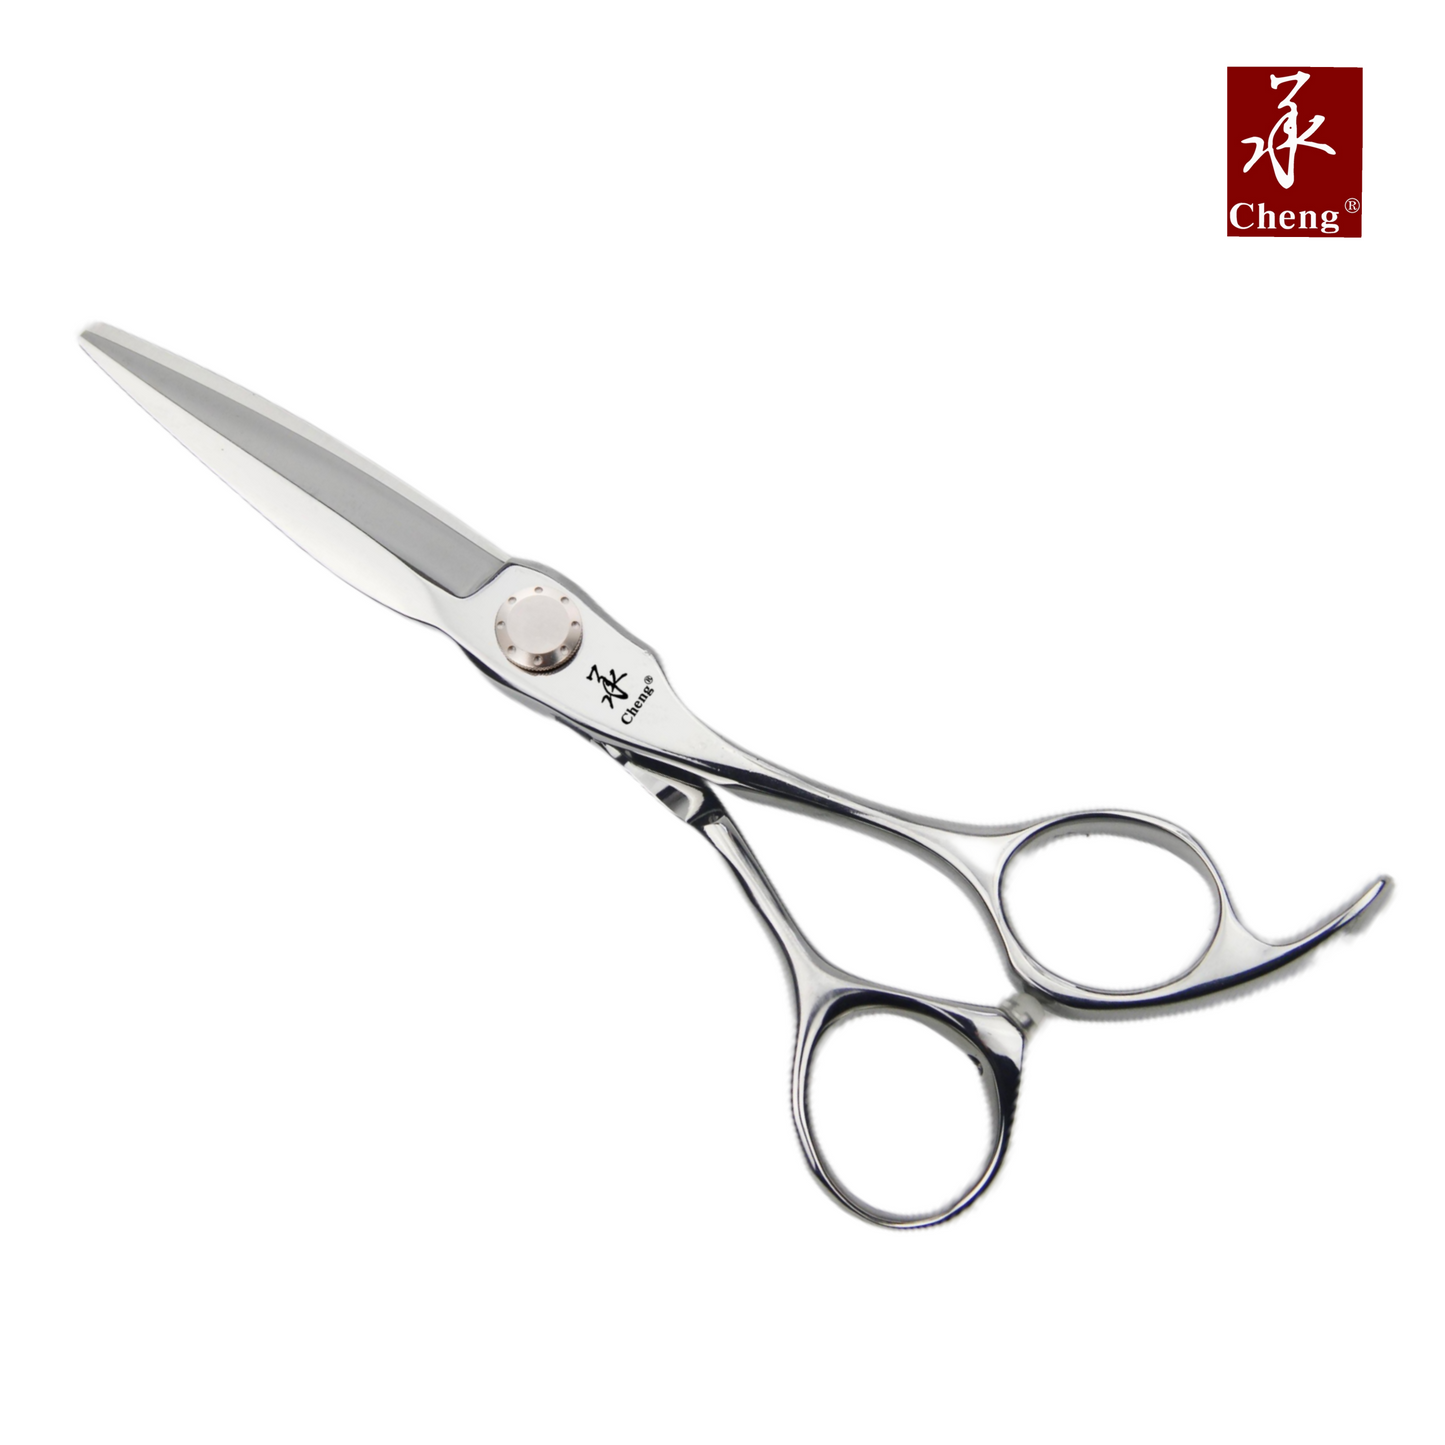 UA-55G/UA-60G 5.5" 6.0" Beauty Sliding Hair cutting Scissors 440C